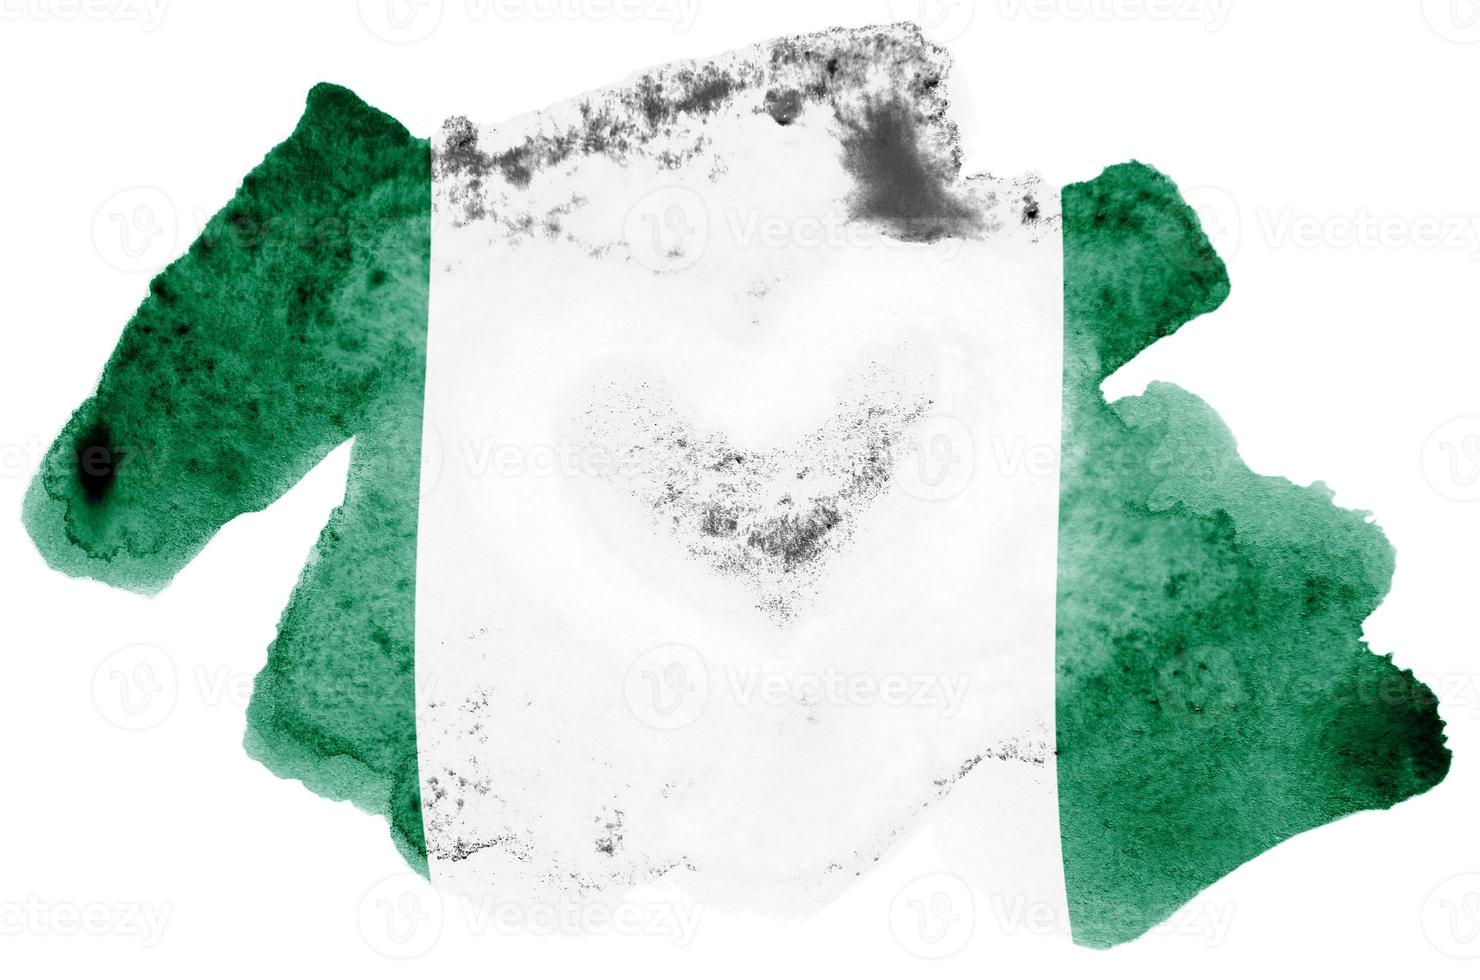 bandeira da nigéria é retratada em estilo aquarela líquido isolado no fundo branco foto